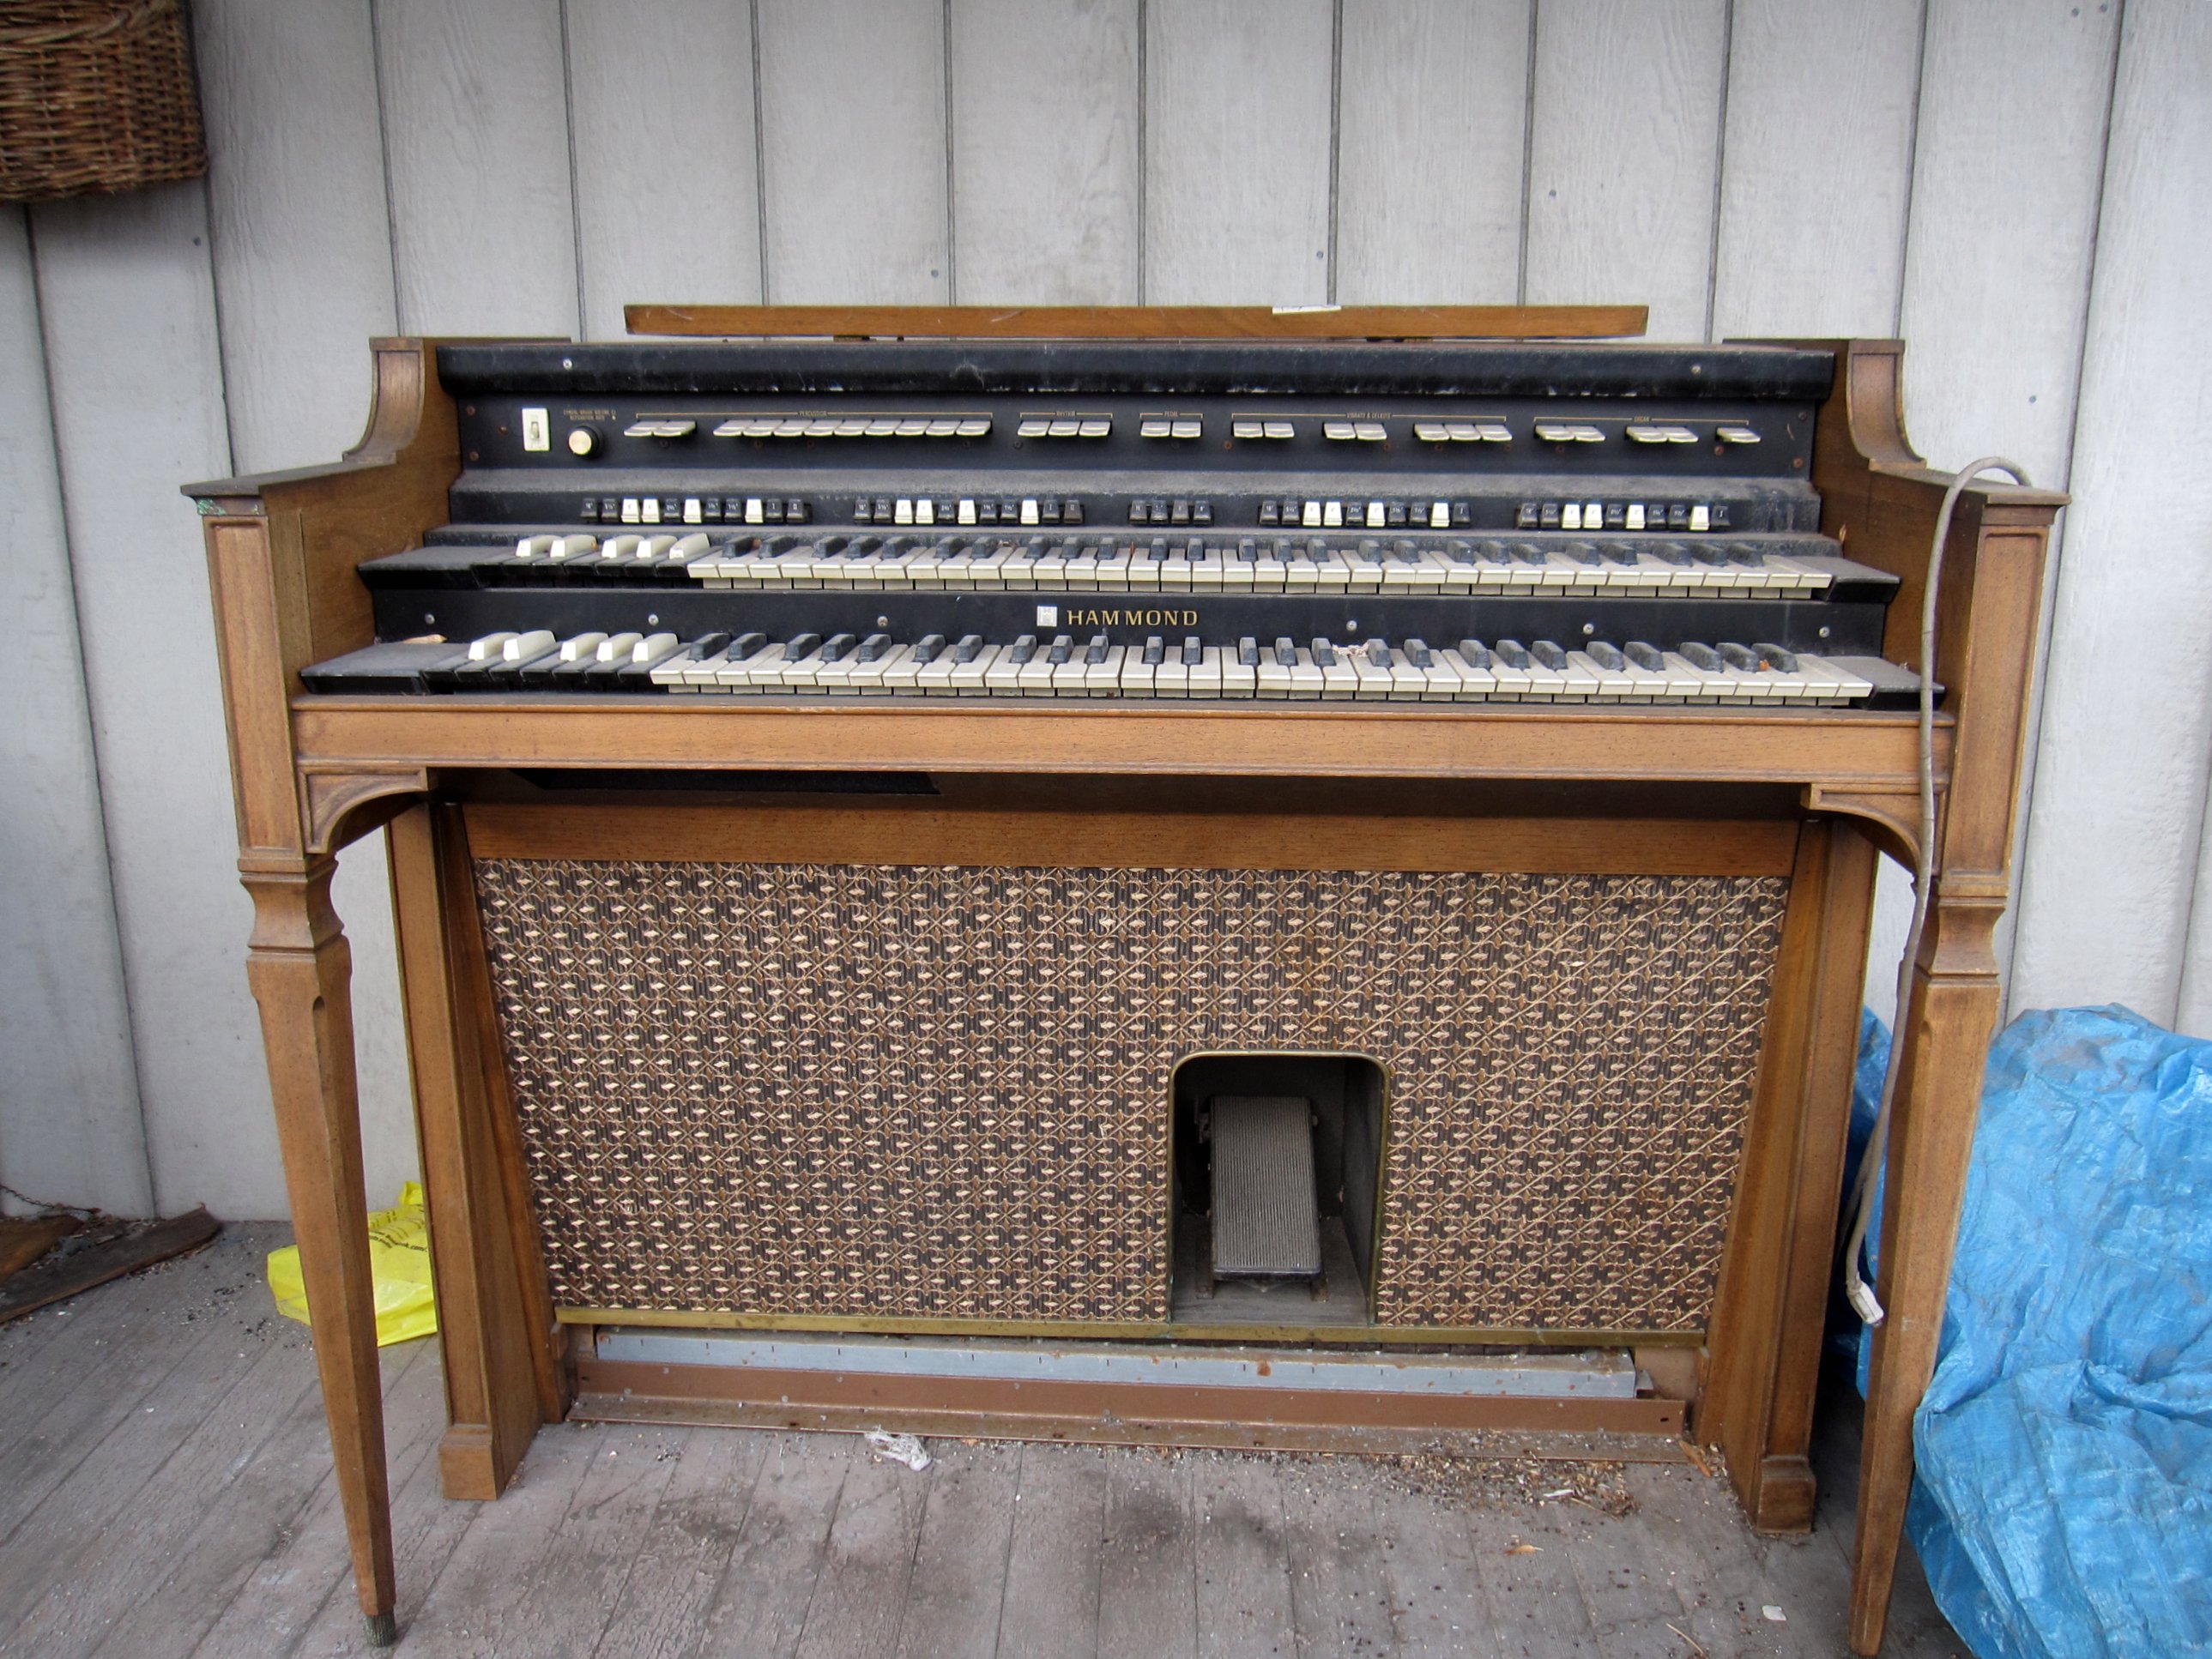 Hammond organ serial lookup